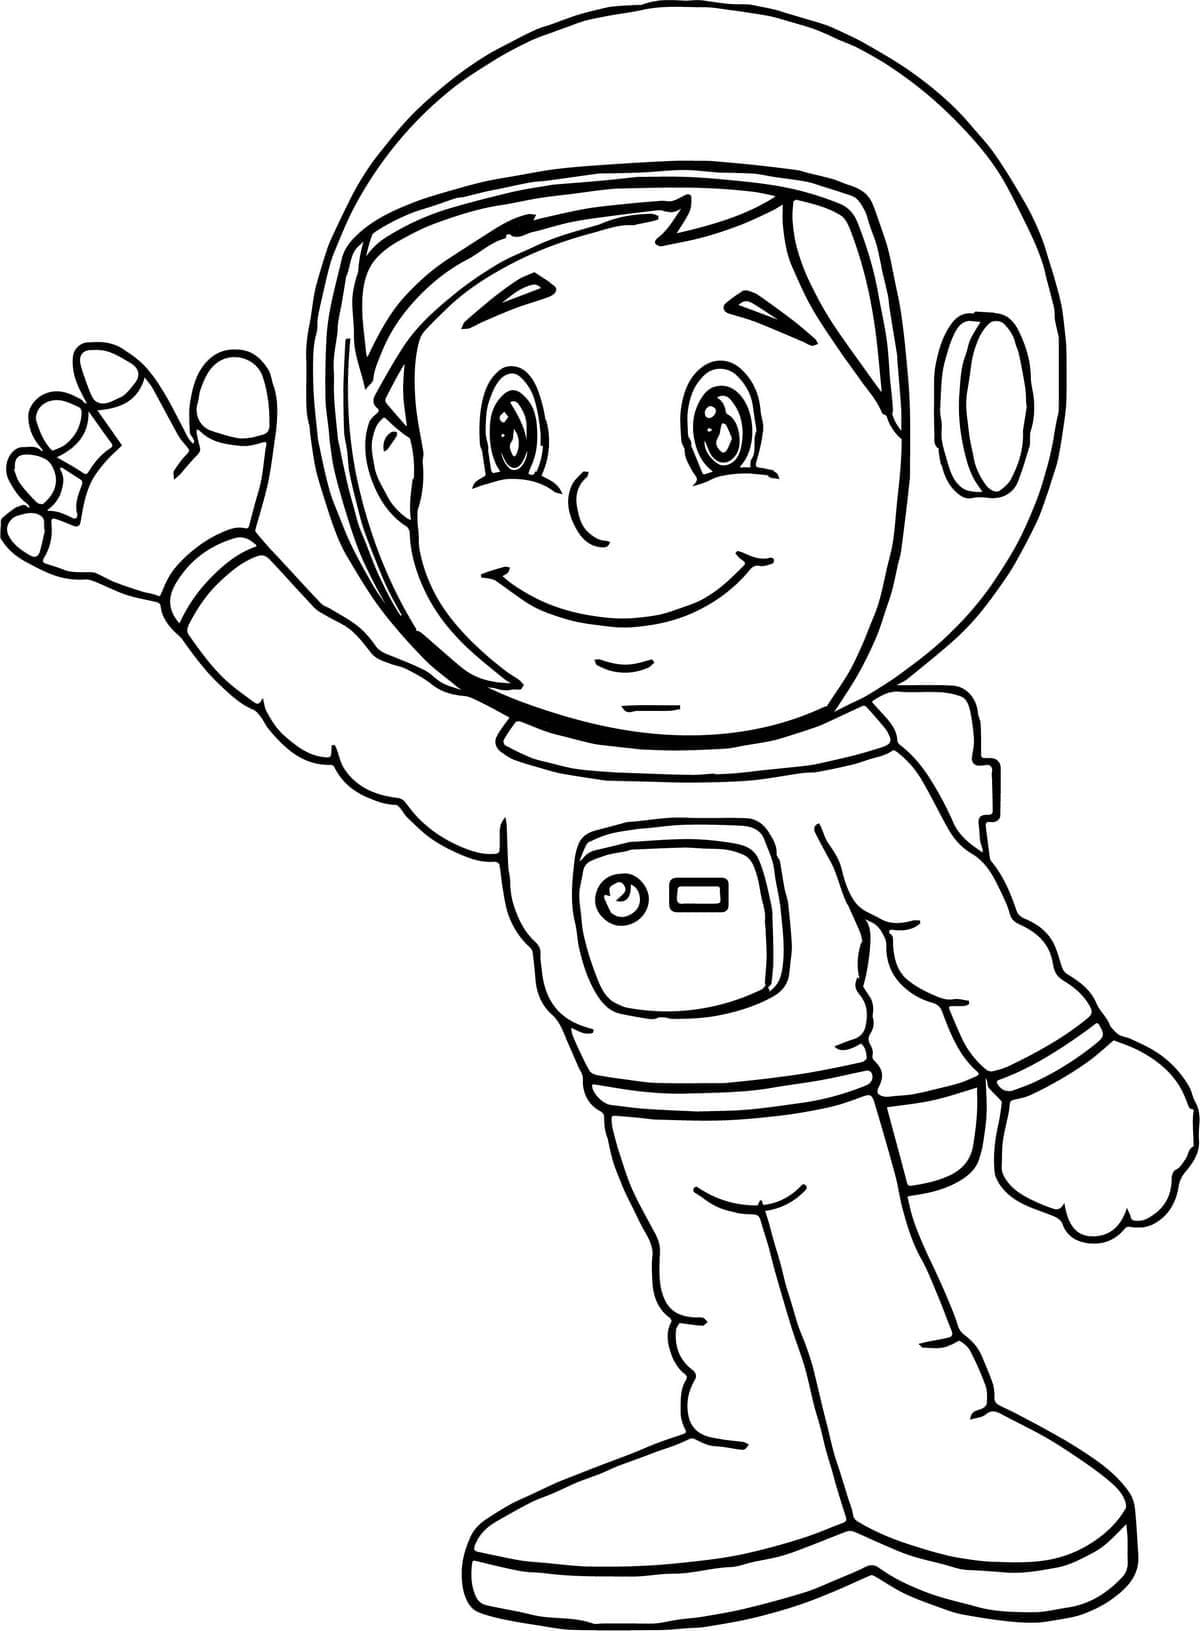 космонавт картинка раскраска для детей 8